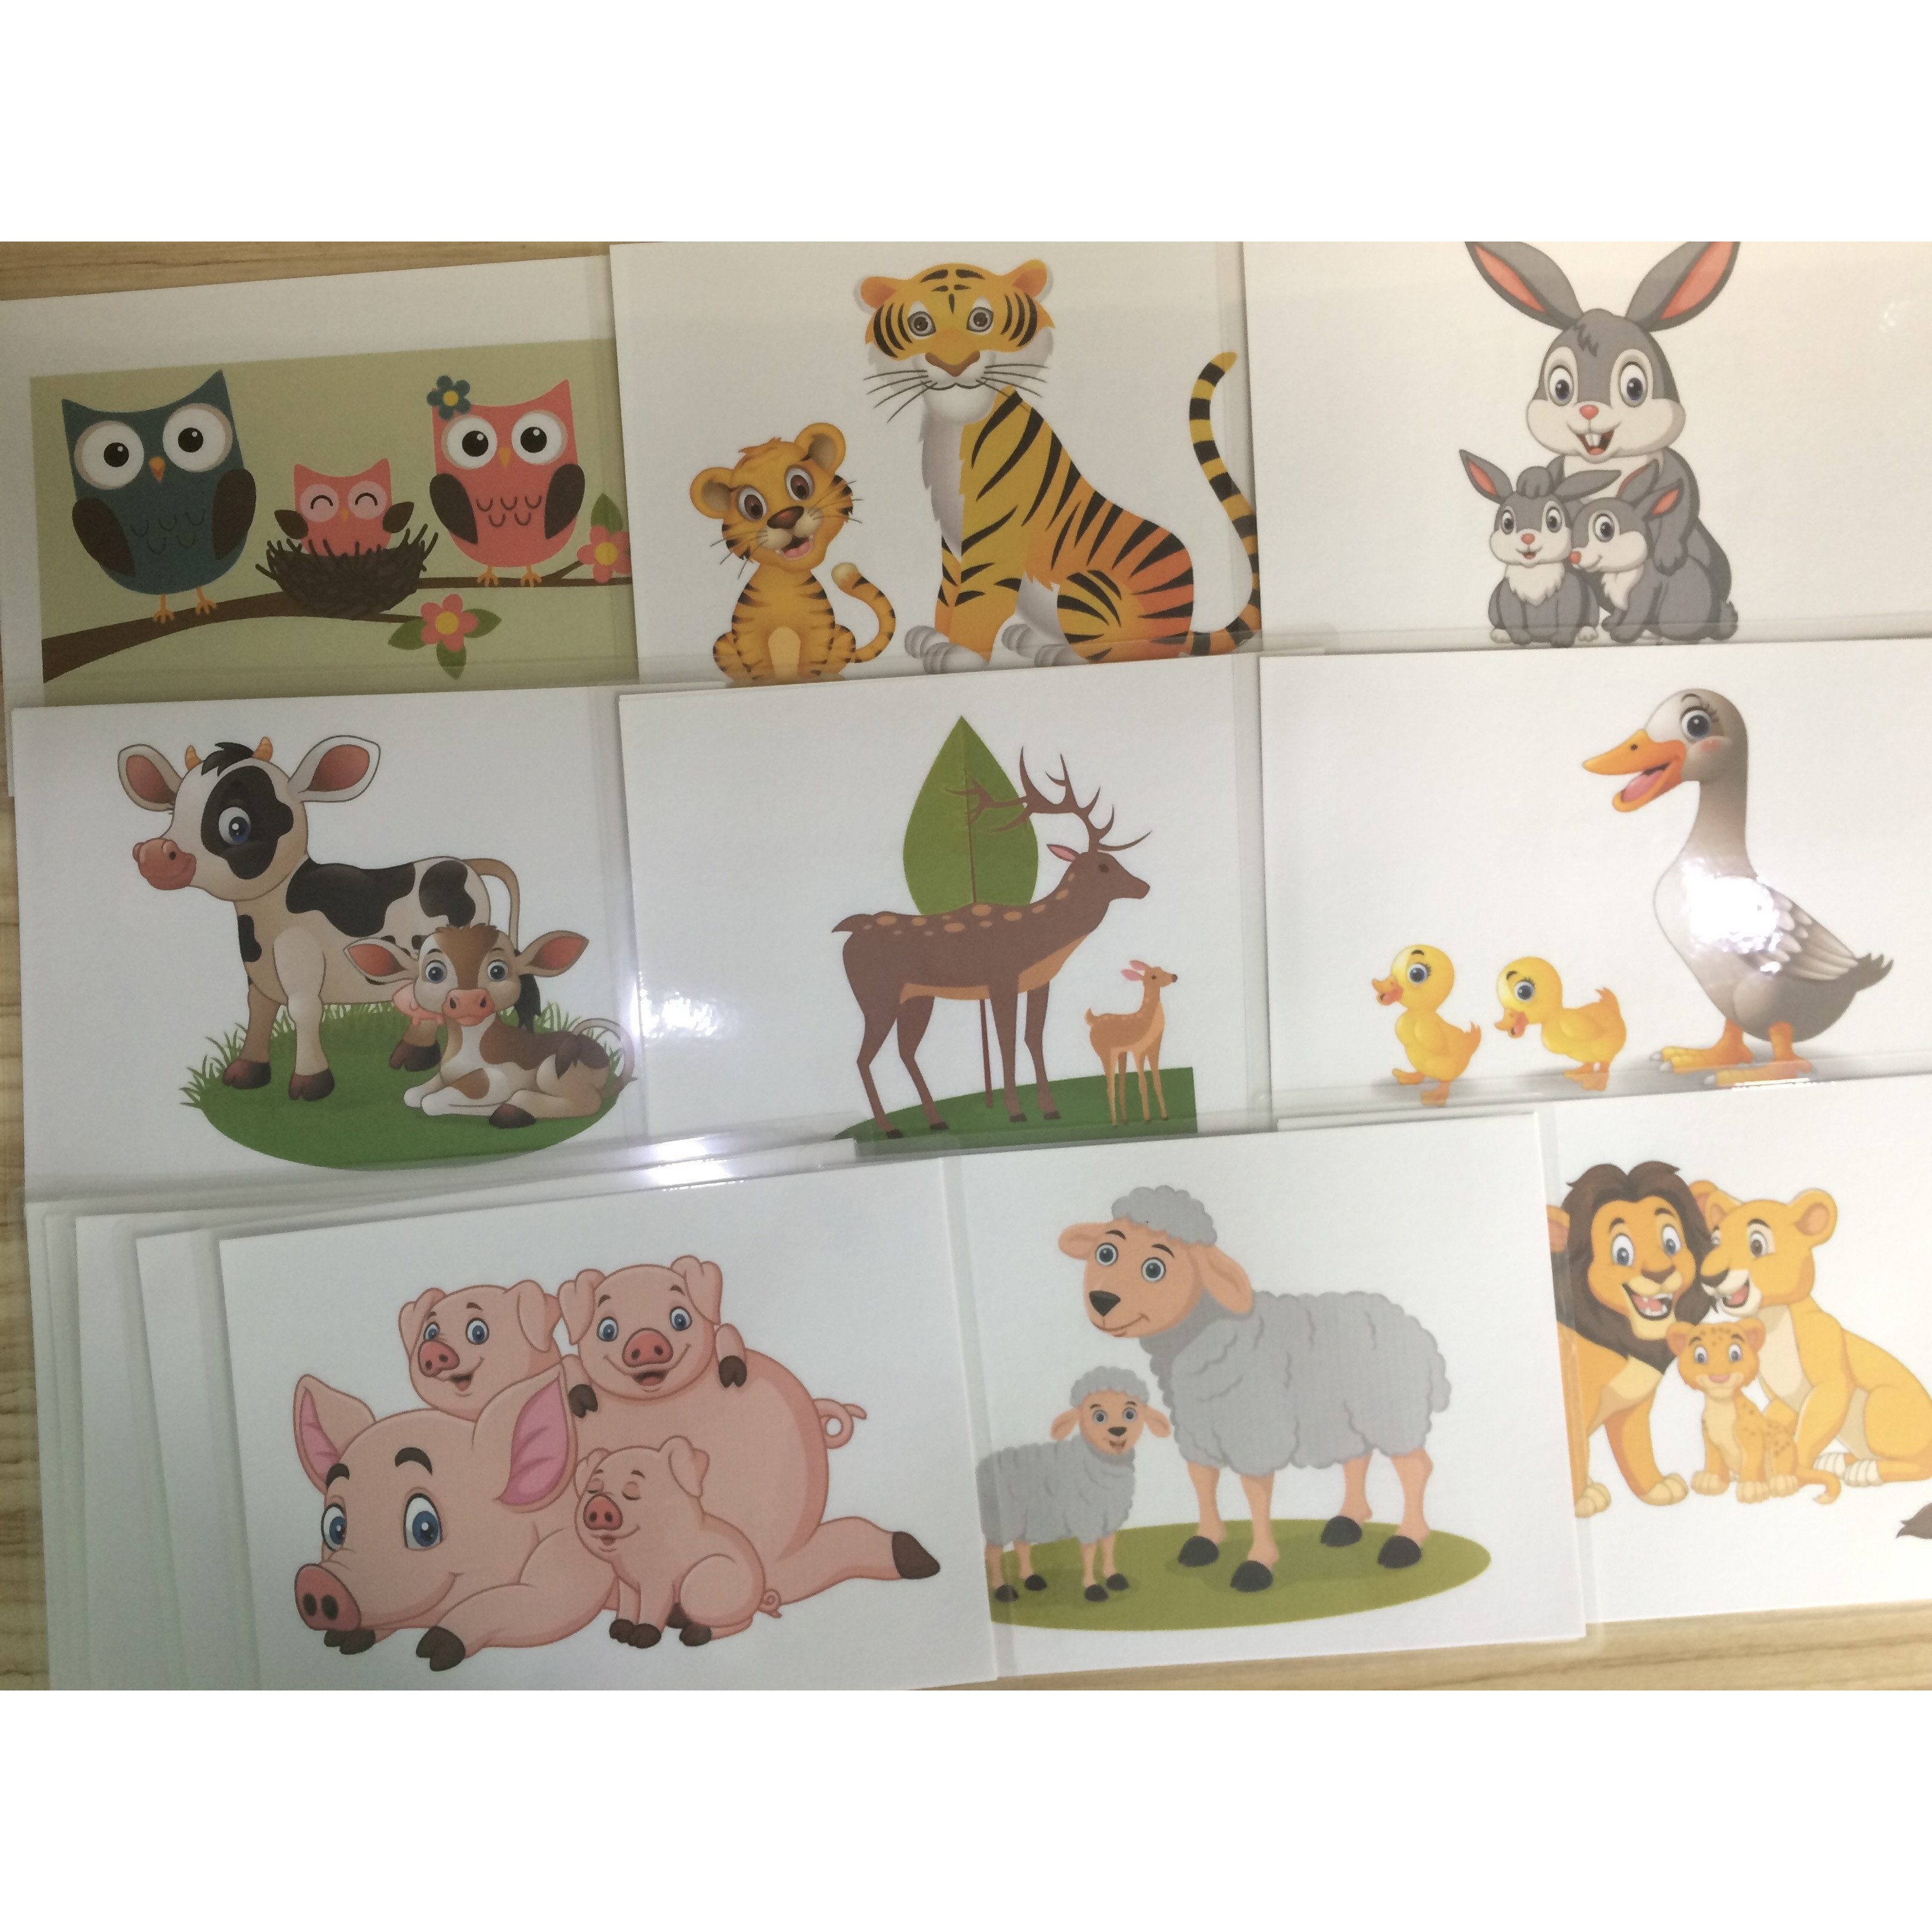 Baby animals' name Flashcards - Thẻ học tiếng Anh chủ đề tên các động vật con - 15 cards: bunny, kitty, duckling, owlet